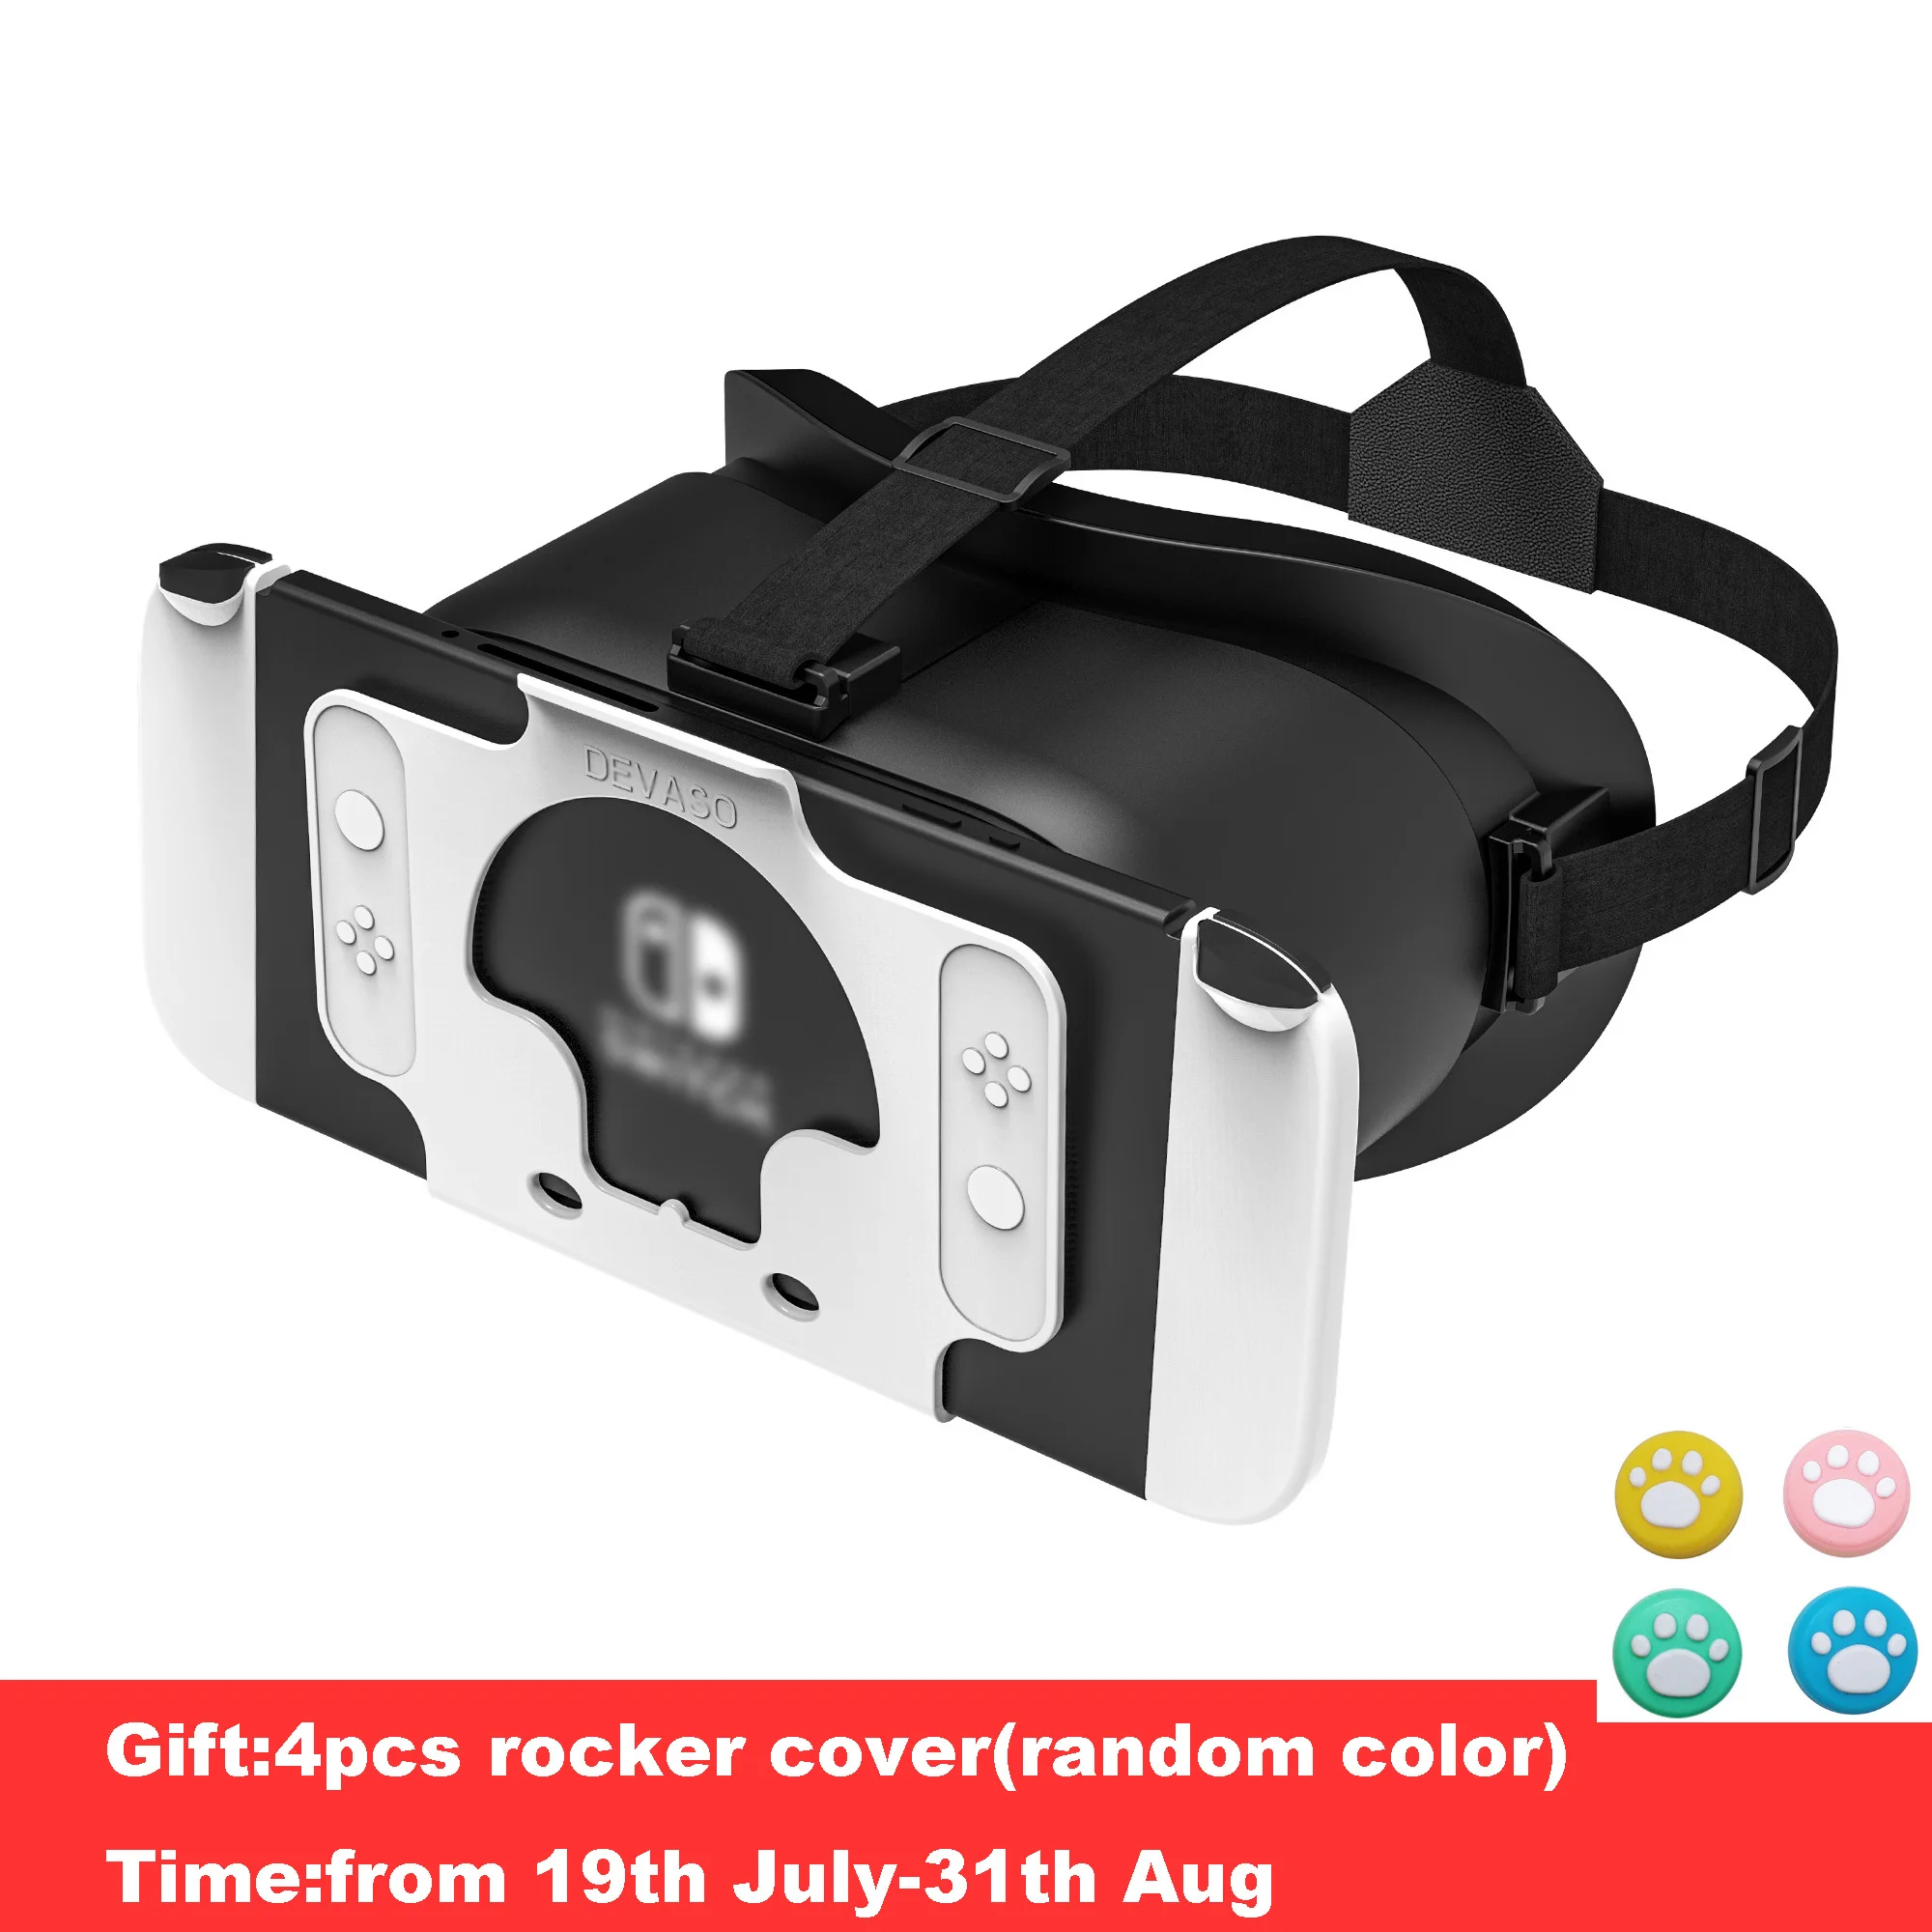 https://ae01.alicdn.com/kf/Sd67e0233c16e4e5988e238ca97f9a85eU/Casque-VR-pour-Nintendo-Switch-mod-le-OLED-lunettes-3D-VR-r-alit-virtuelle.jpg